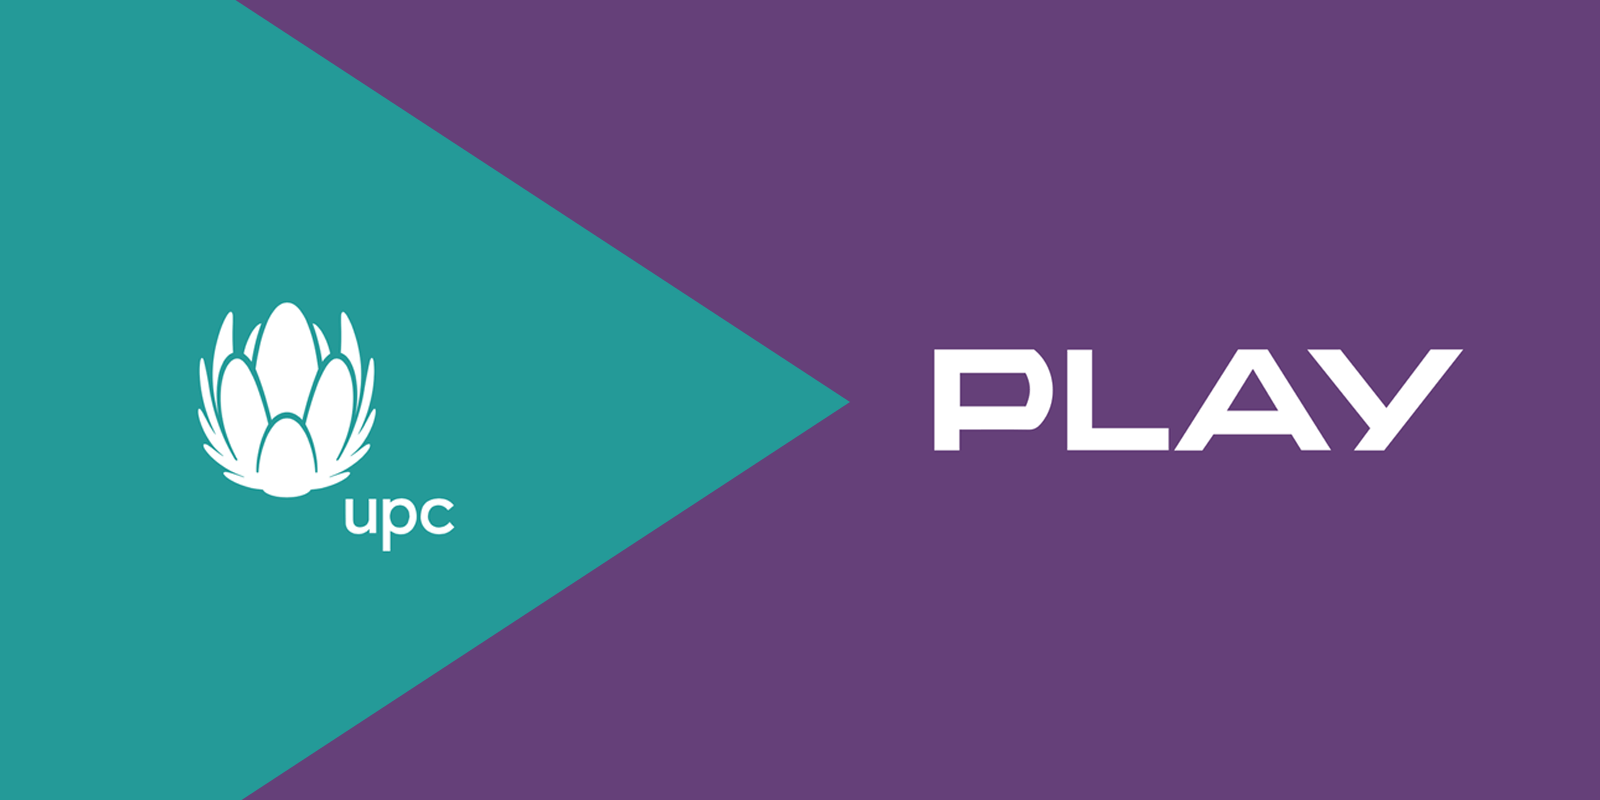 Marka UPC przemianowana na Play – co to oznacza dla klientów? UPC Polska MEDIARUN COM PLAY UPC V2